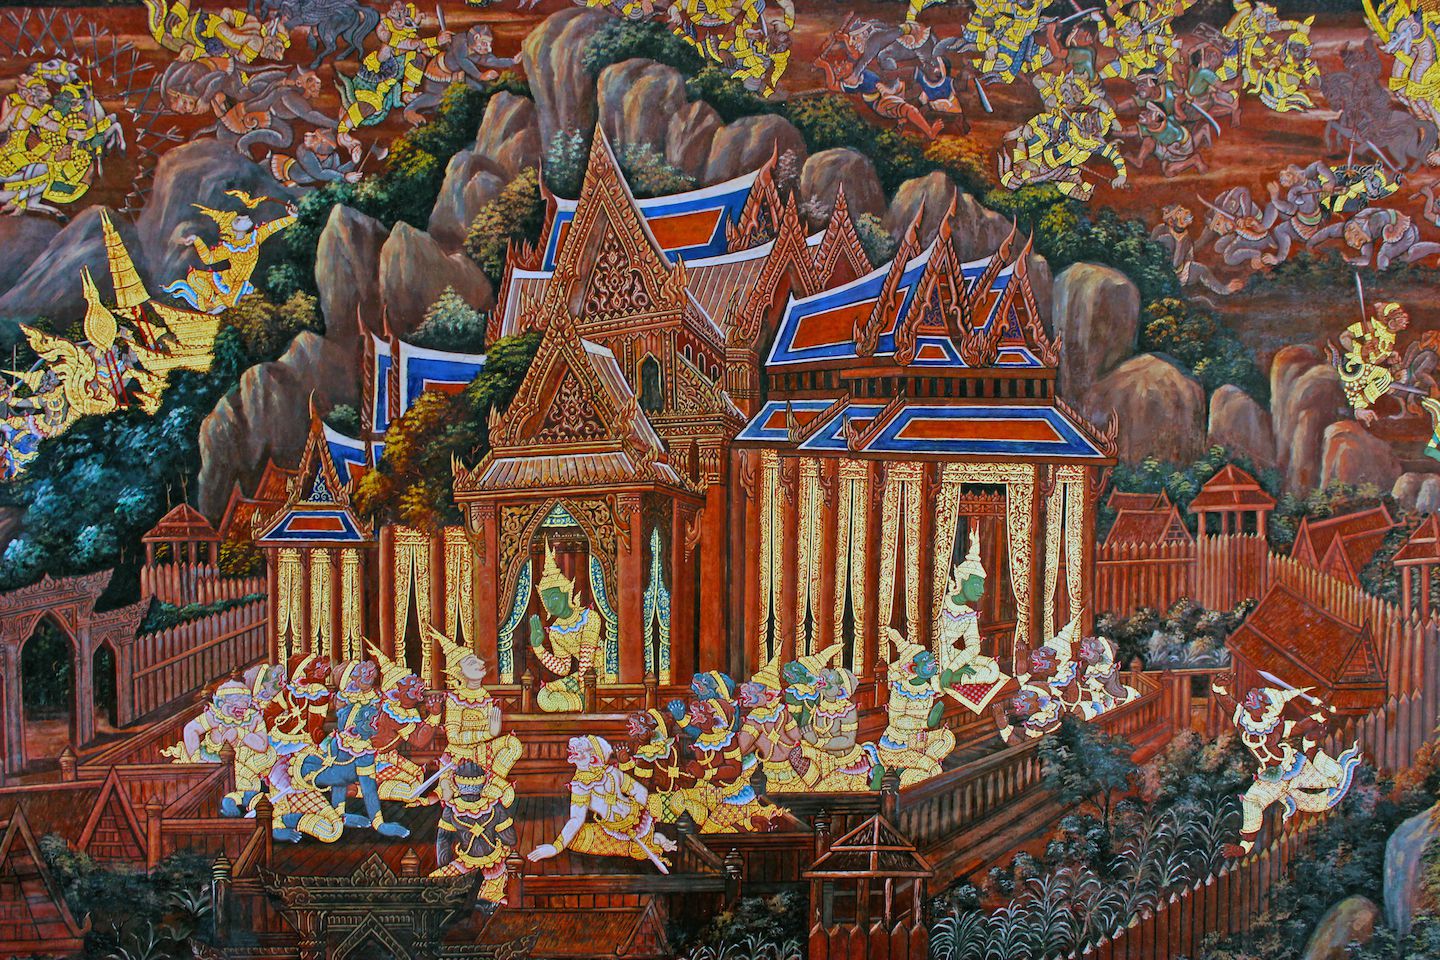 Painting on the galleries of Wat Phra Kaew